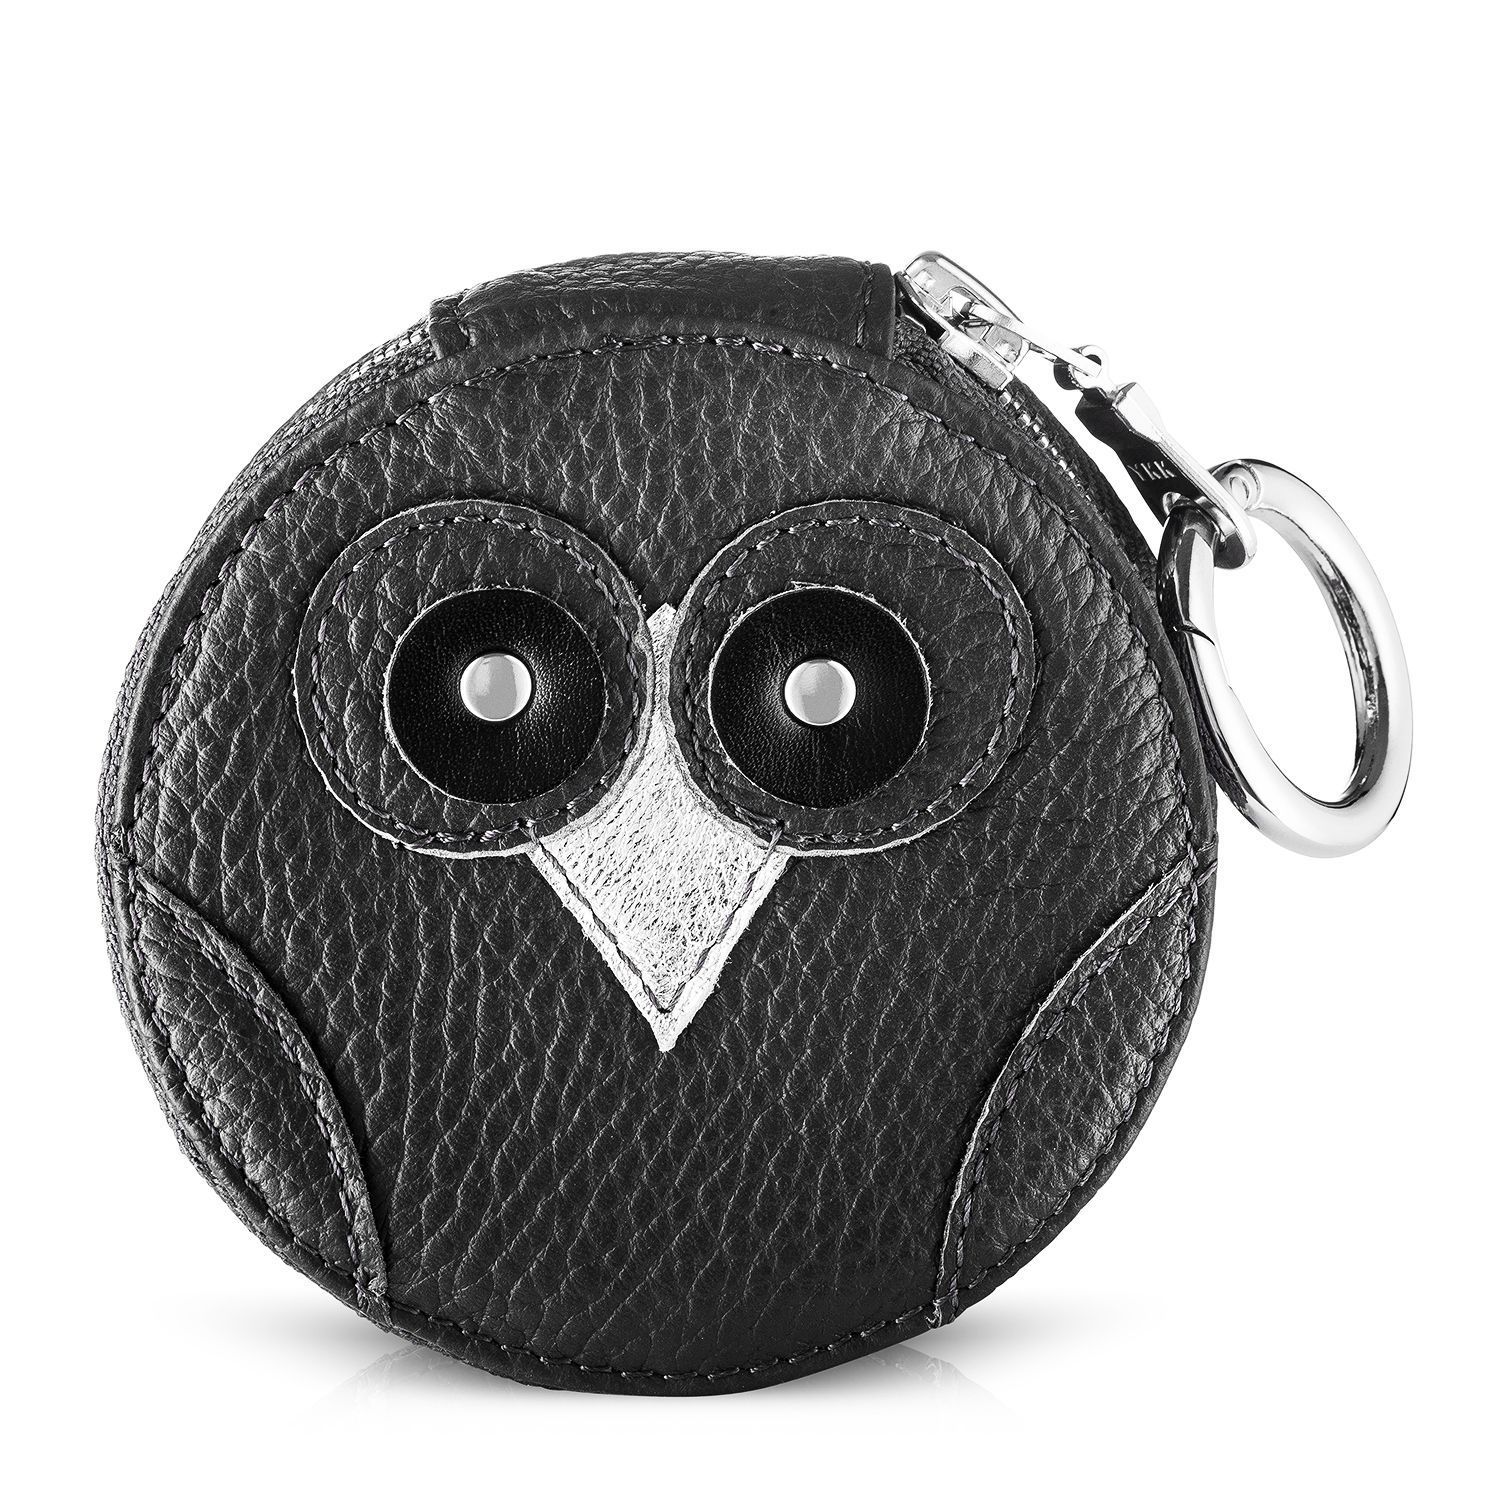 IDA owl purse - black